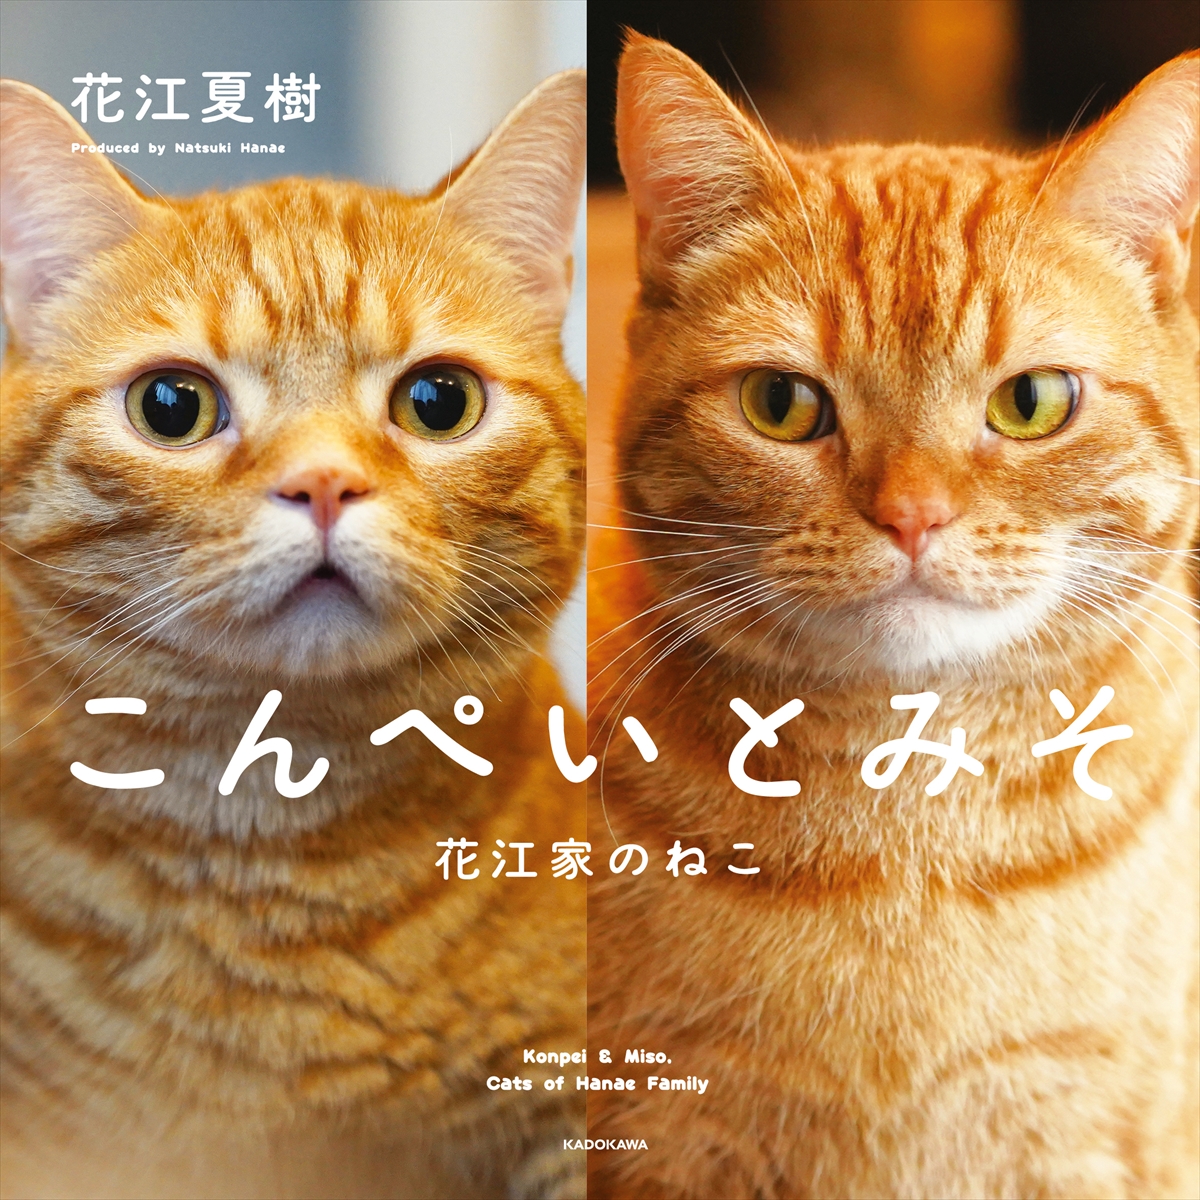 人気声優・花江夏樹が手掛けた初の猫写真集『こんぺいとみそ』が11月17日発売